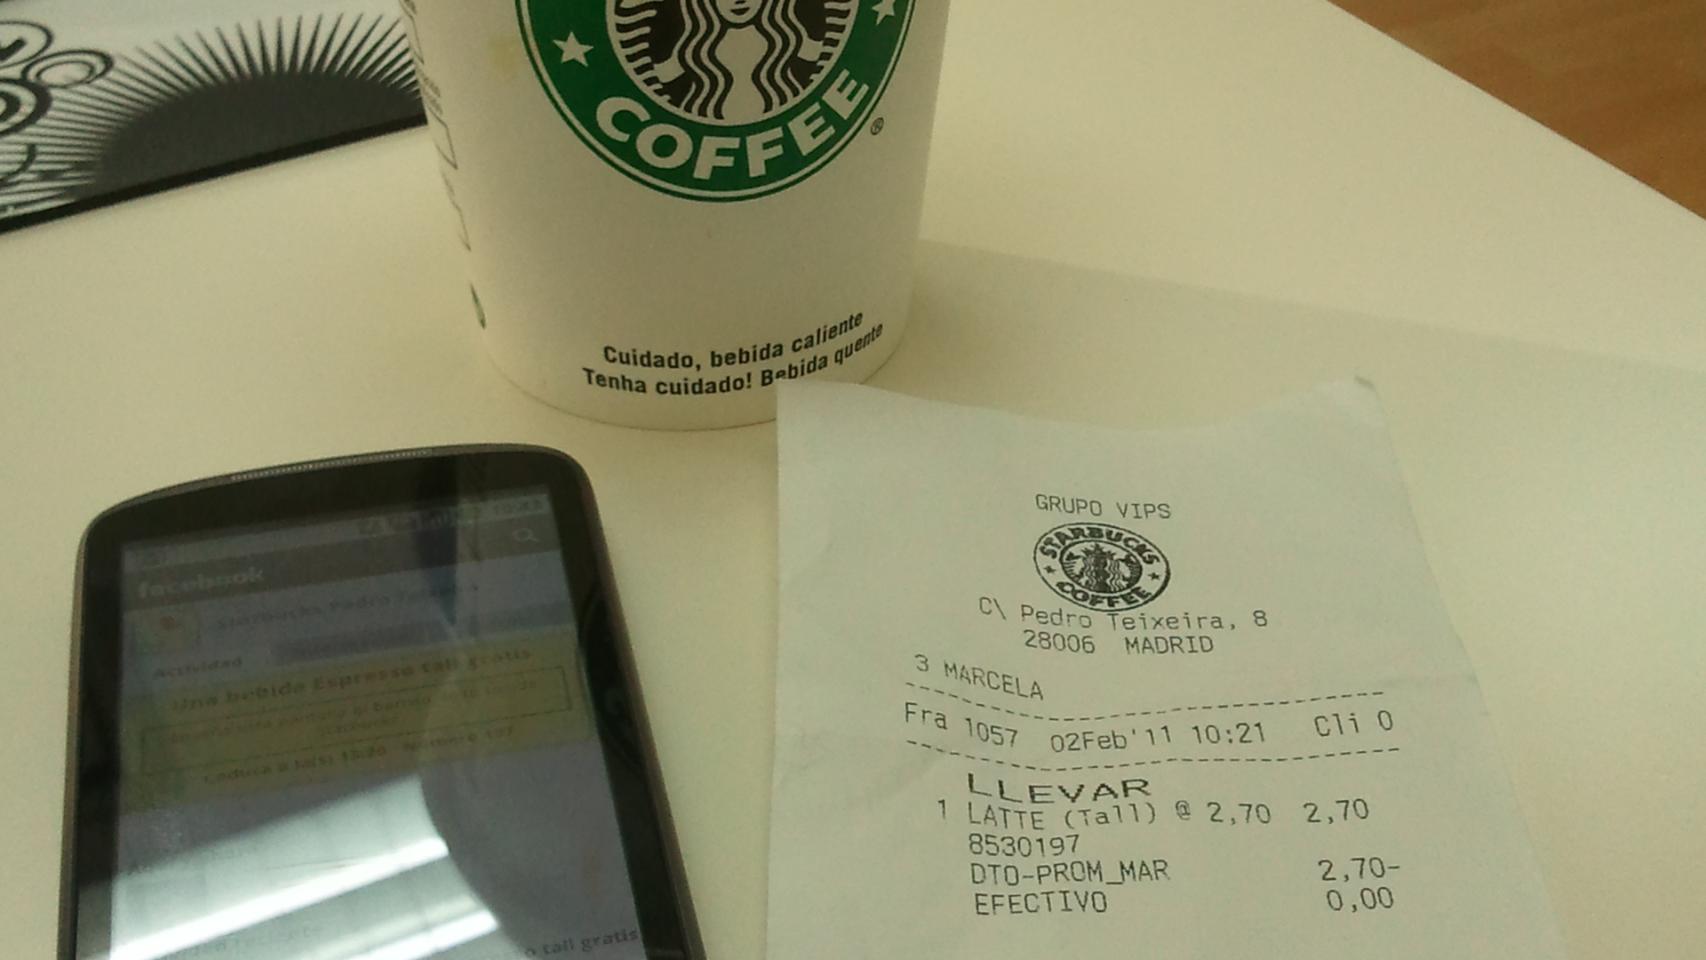 Starbucks, H&M, El Corte Inglés: gratis o descuentos  con Facebook y tu Android (y iPhone y Blackberry)